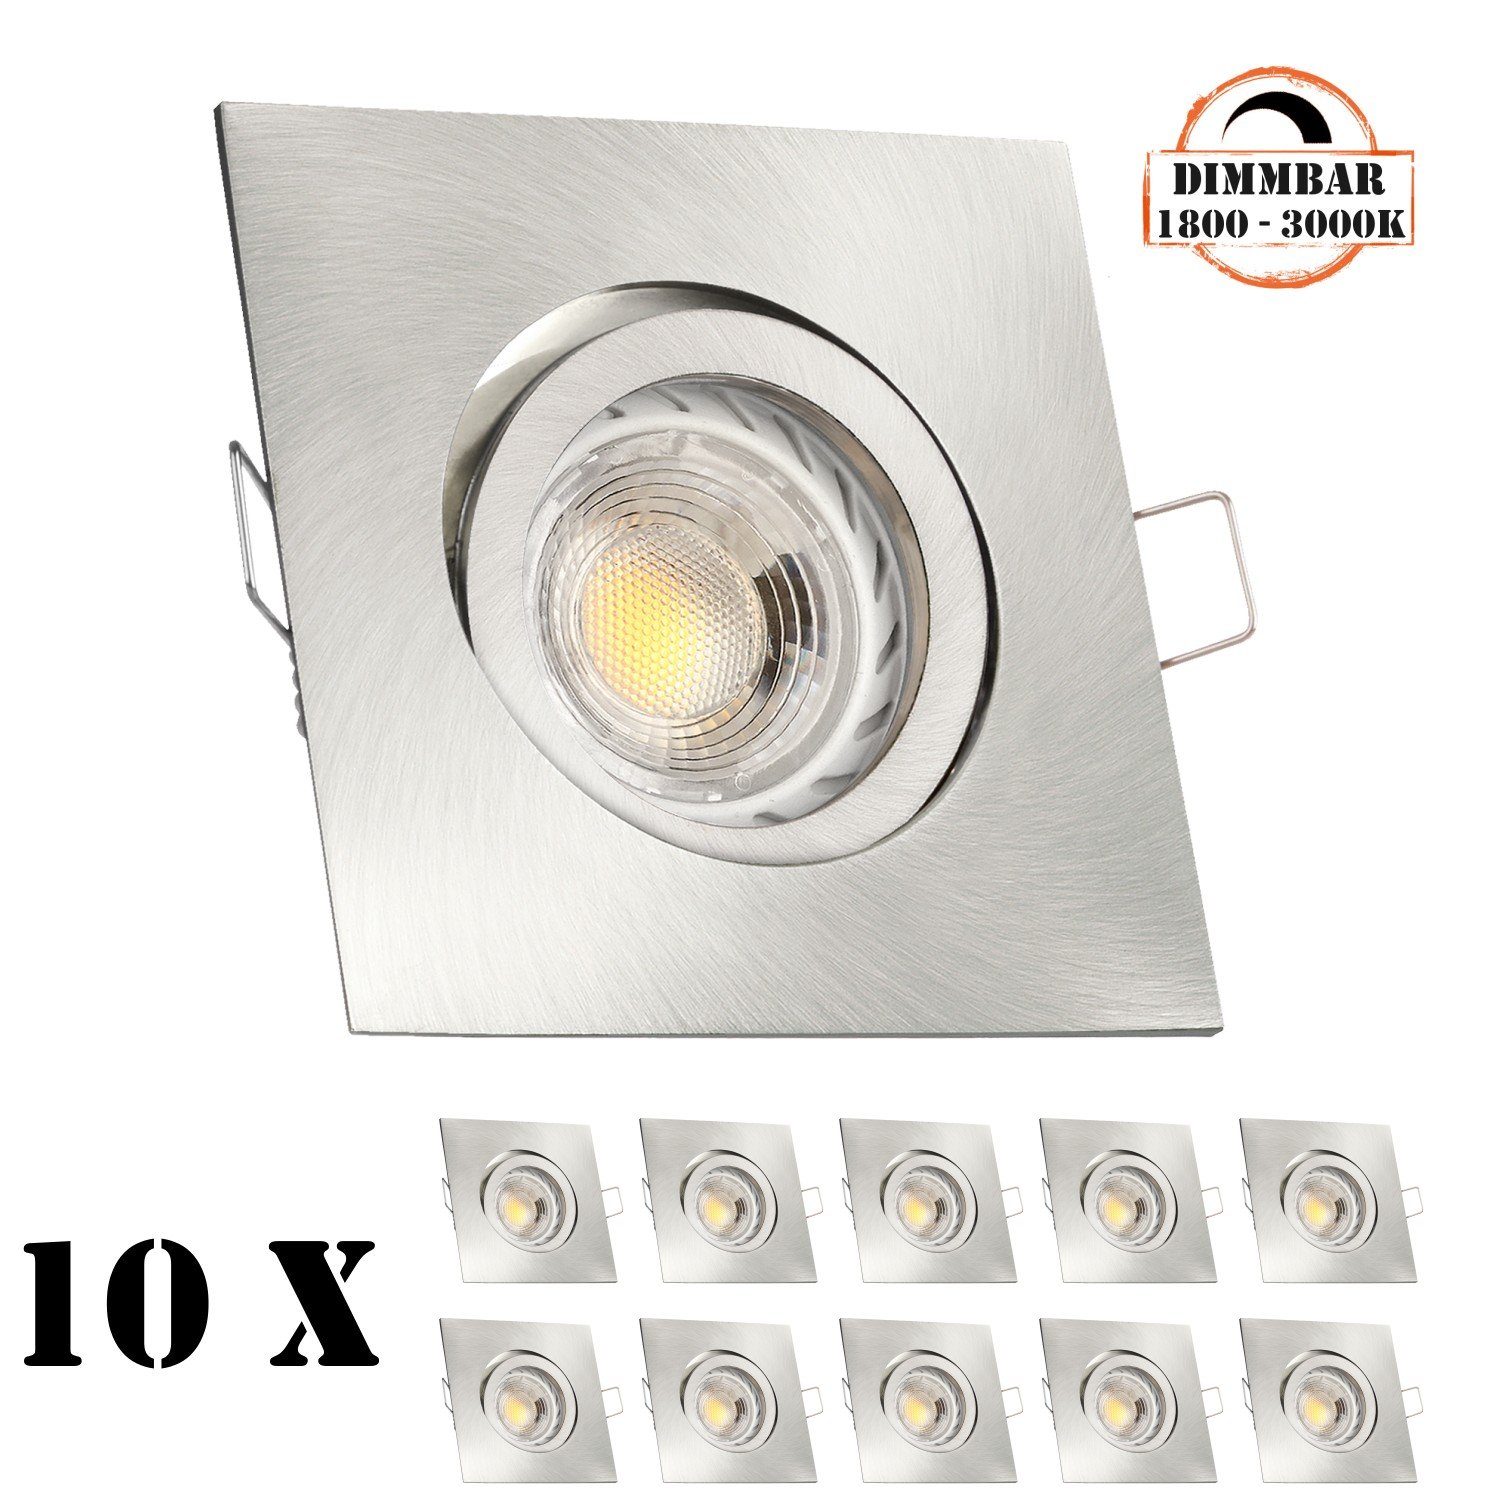 gebürstet / silber Einbaustrahler in GU10 LEDANDO mit Set LED 10er edelstahl 5 LED Einbaustrahler